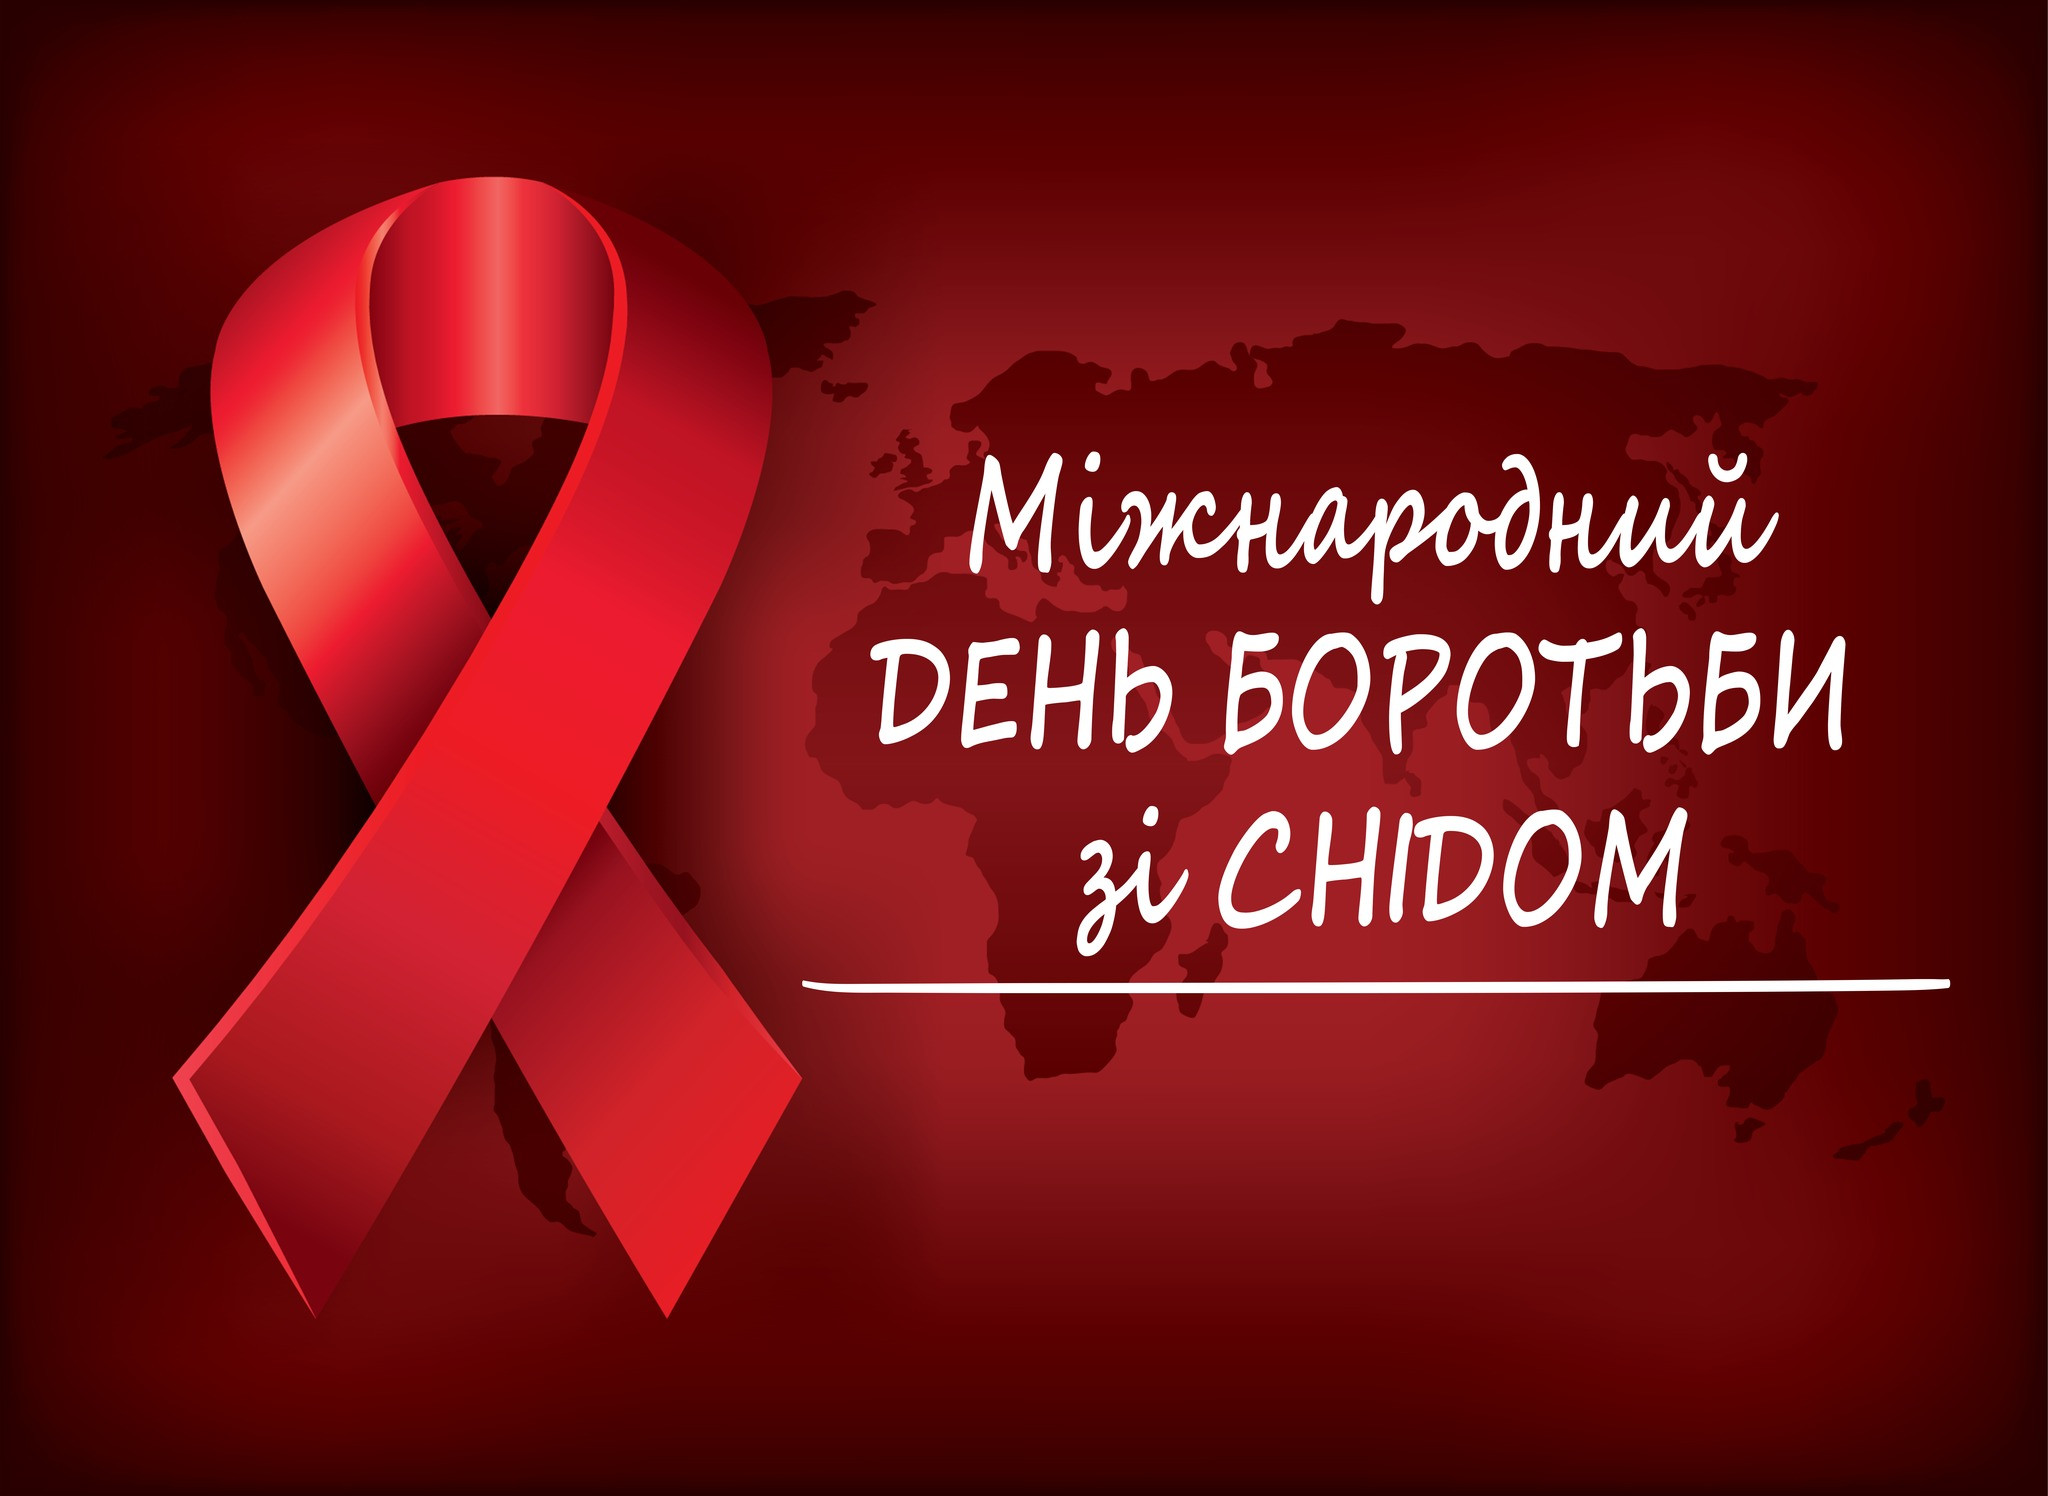 До дня боротьби зі СНІДом: 1 грудня у Броварах відкриють мобільну лабораторію - зображення